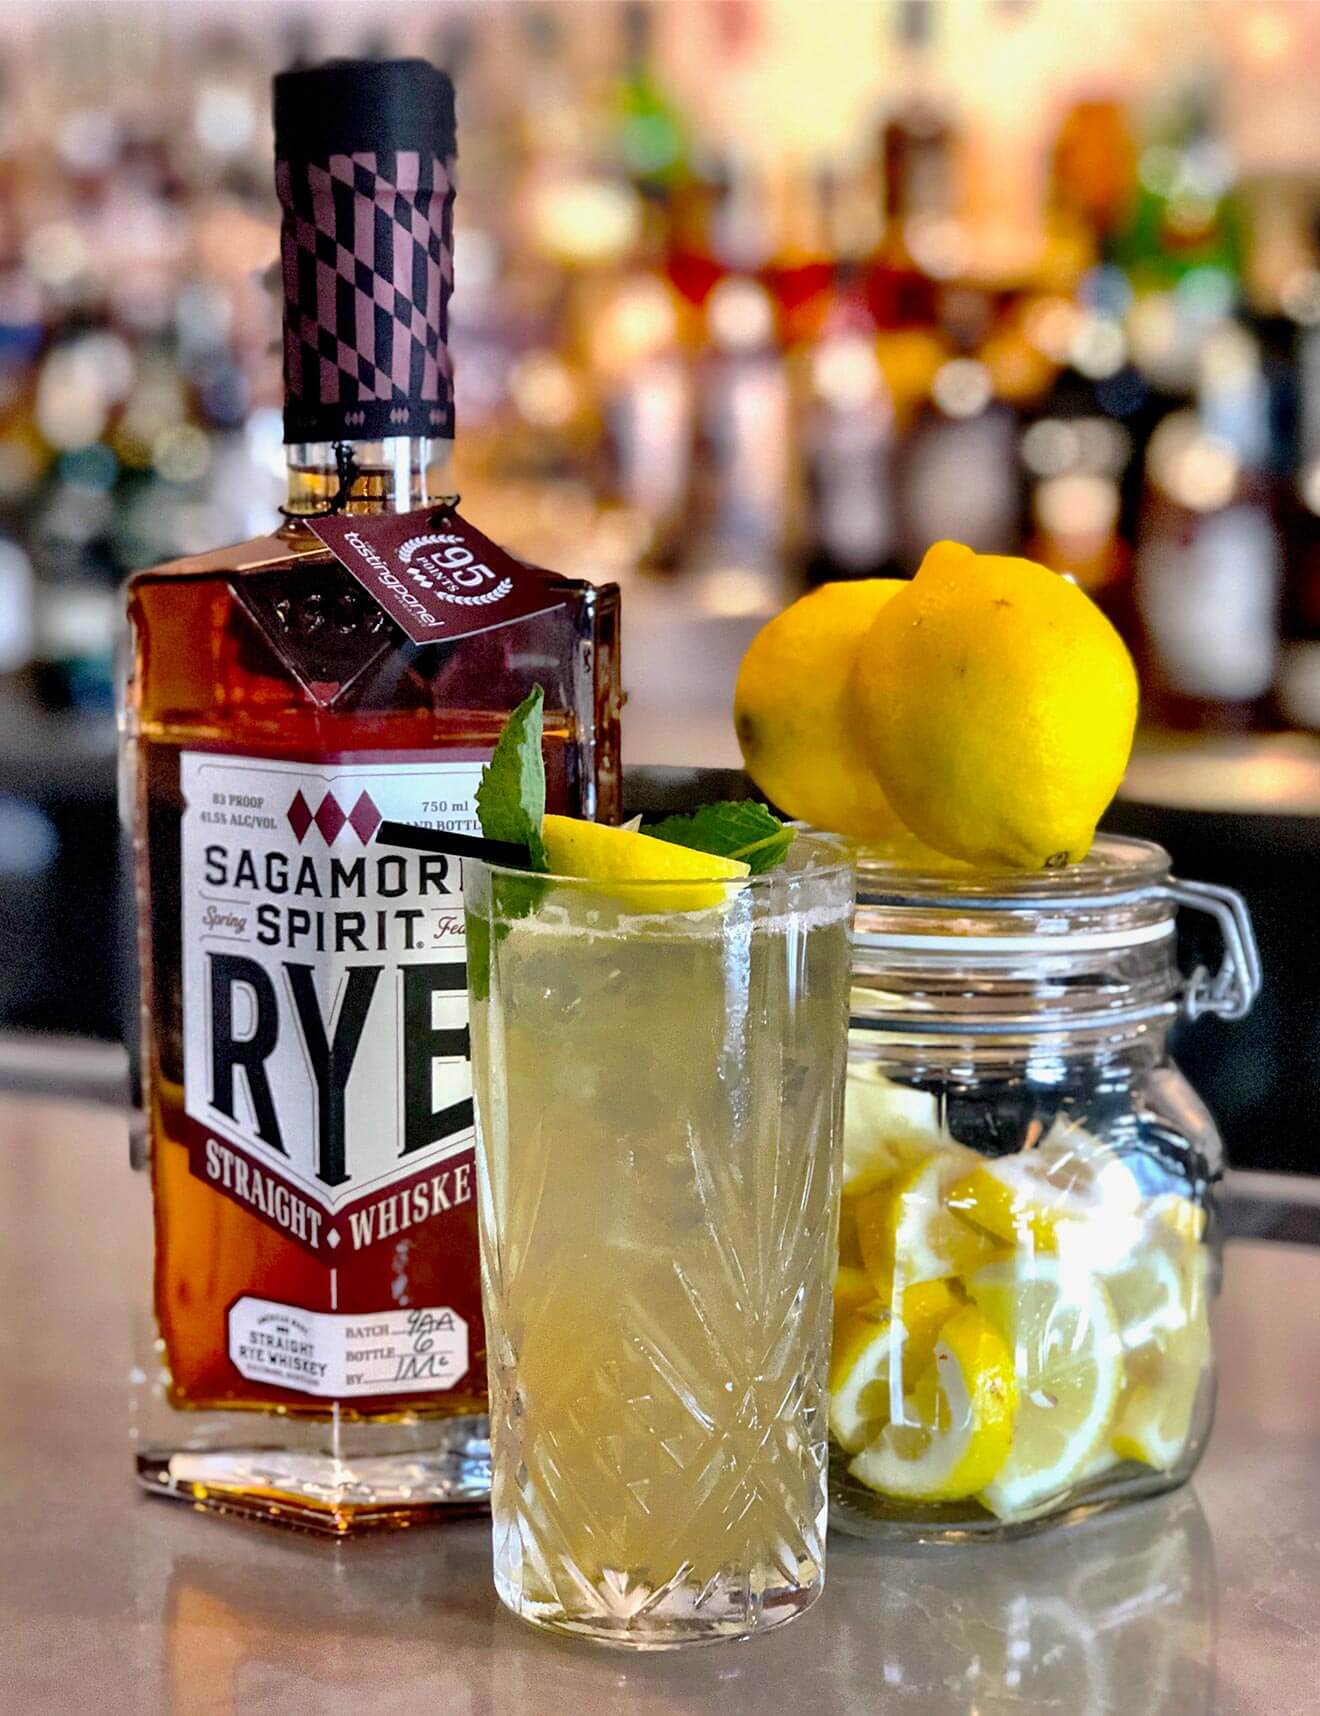 Sagamore Lemonade, cocktail, bottle and garnishes